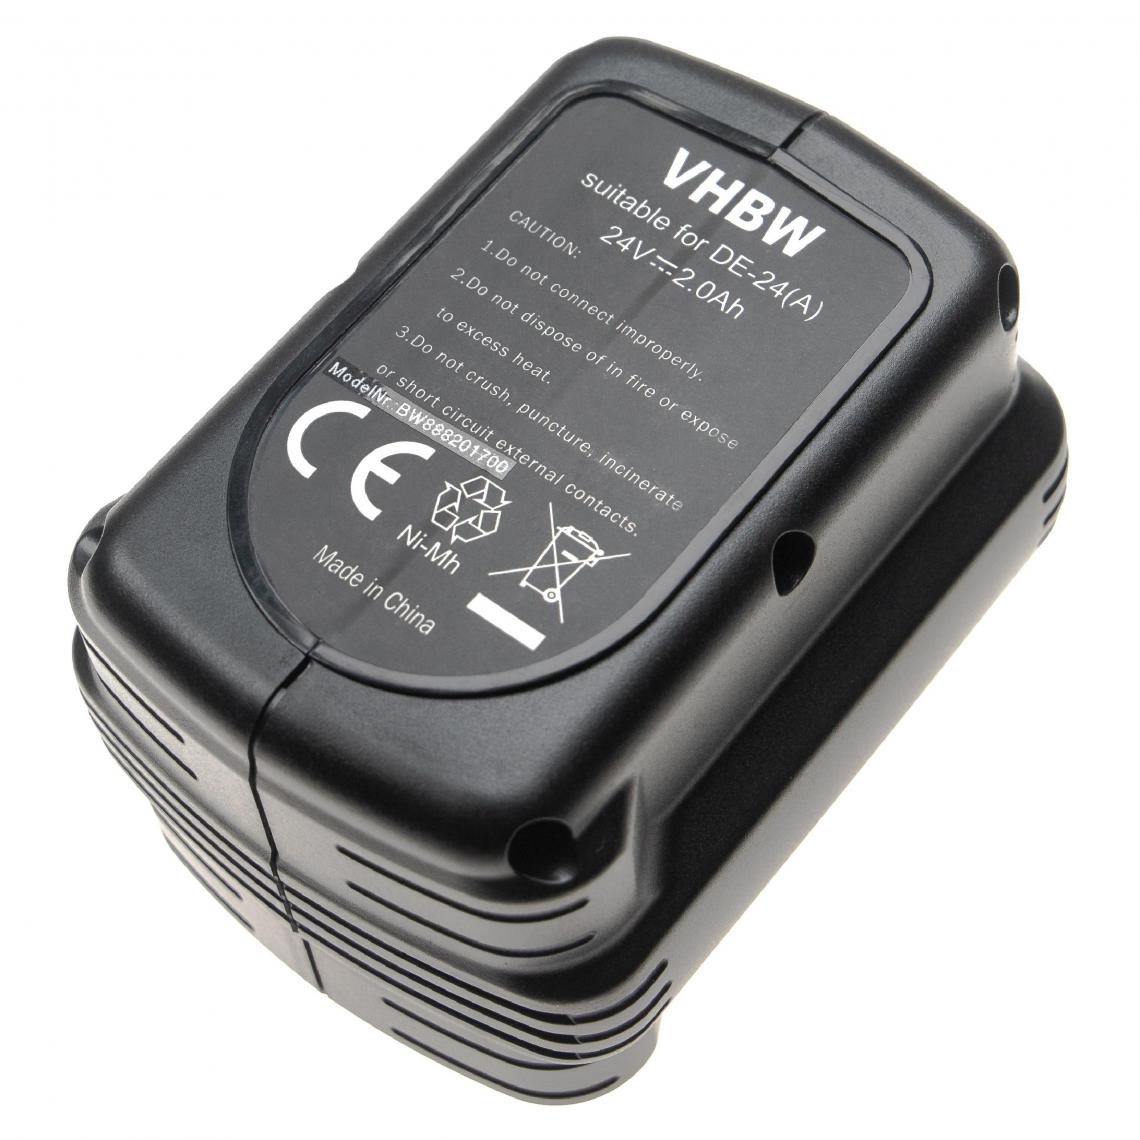 Vhbw - vhbw Batterie compatible avec Dewalt DW007C2, DW007K, DW007K-2, DW007K-XE, DW007KH outil électrique (2000mAh NiMH 24V) - Clouterie